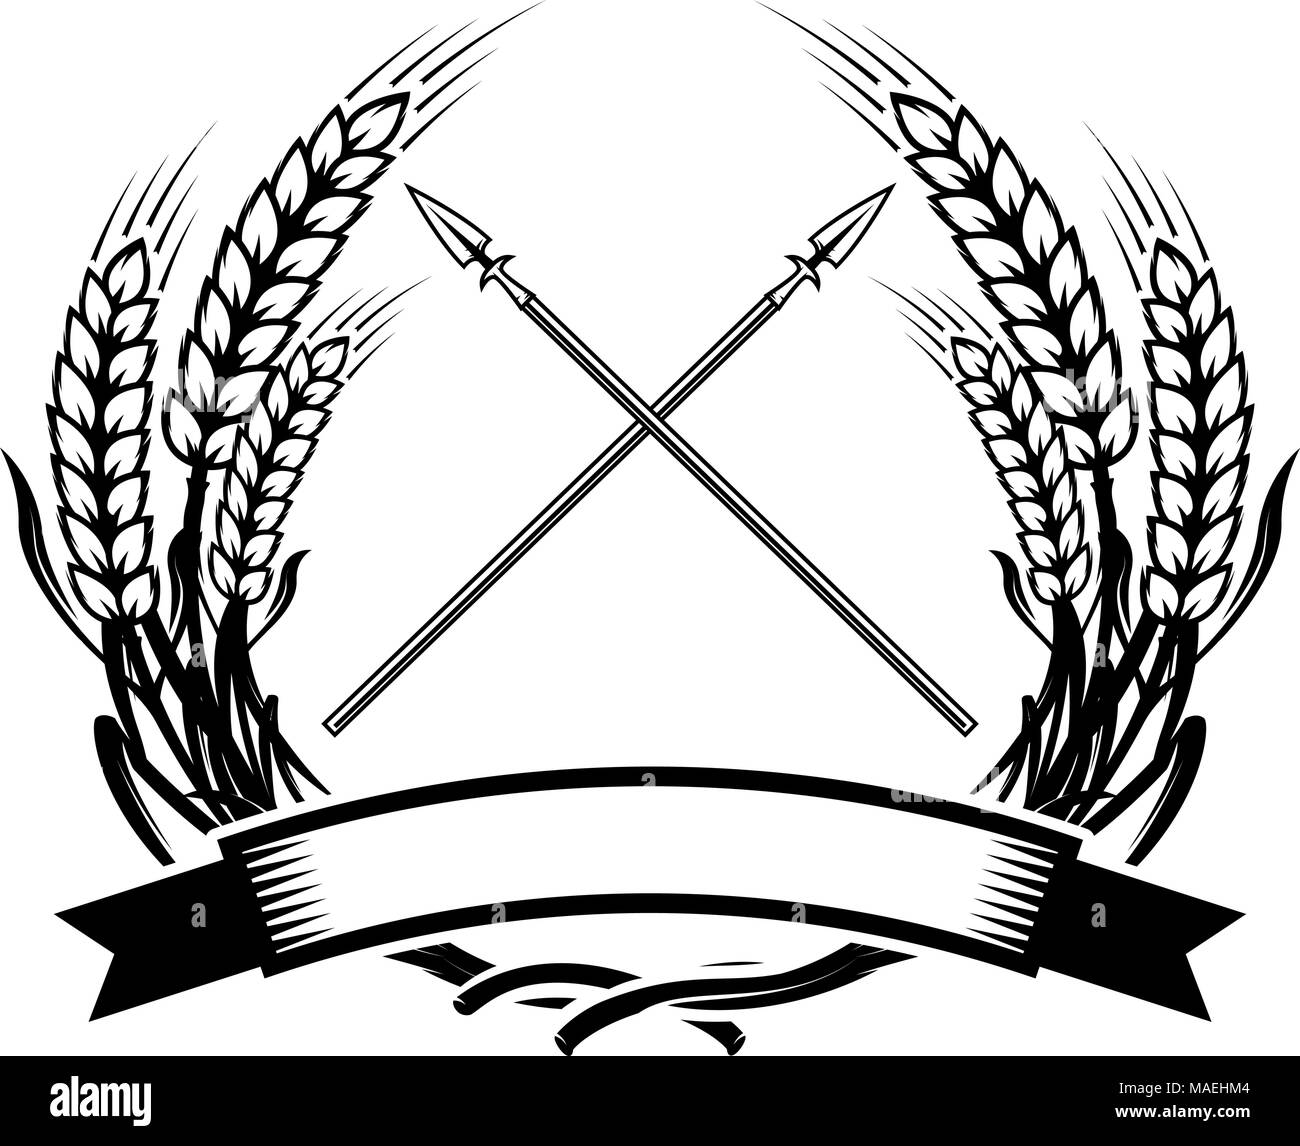 Emblem template with crossed lances. Design element for logo, label, emblem, sign. Vector illustration Stock Vector